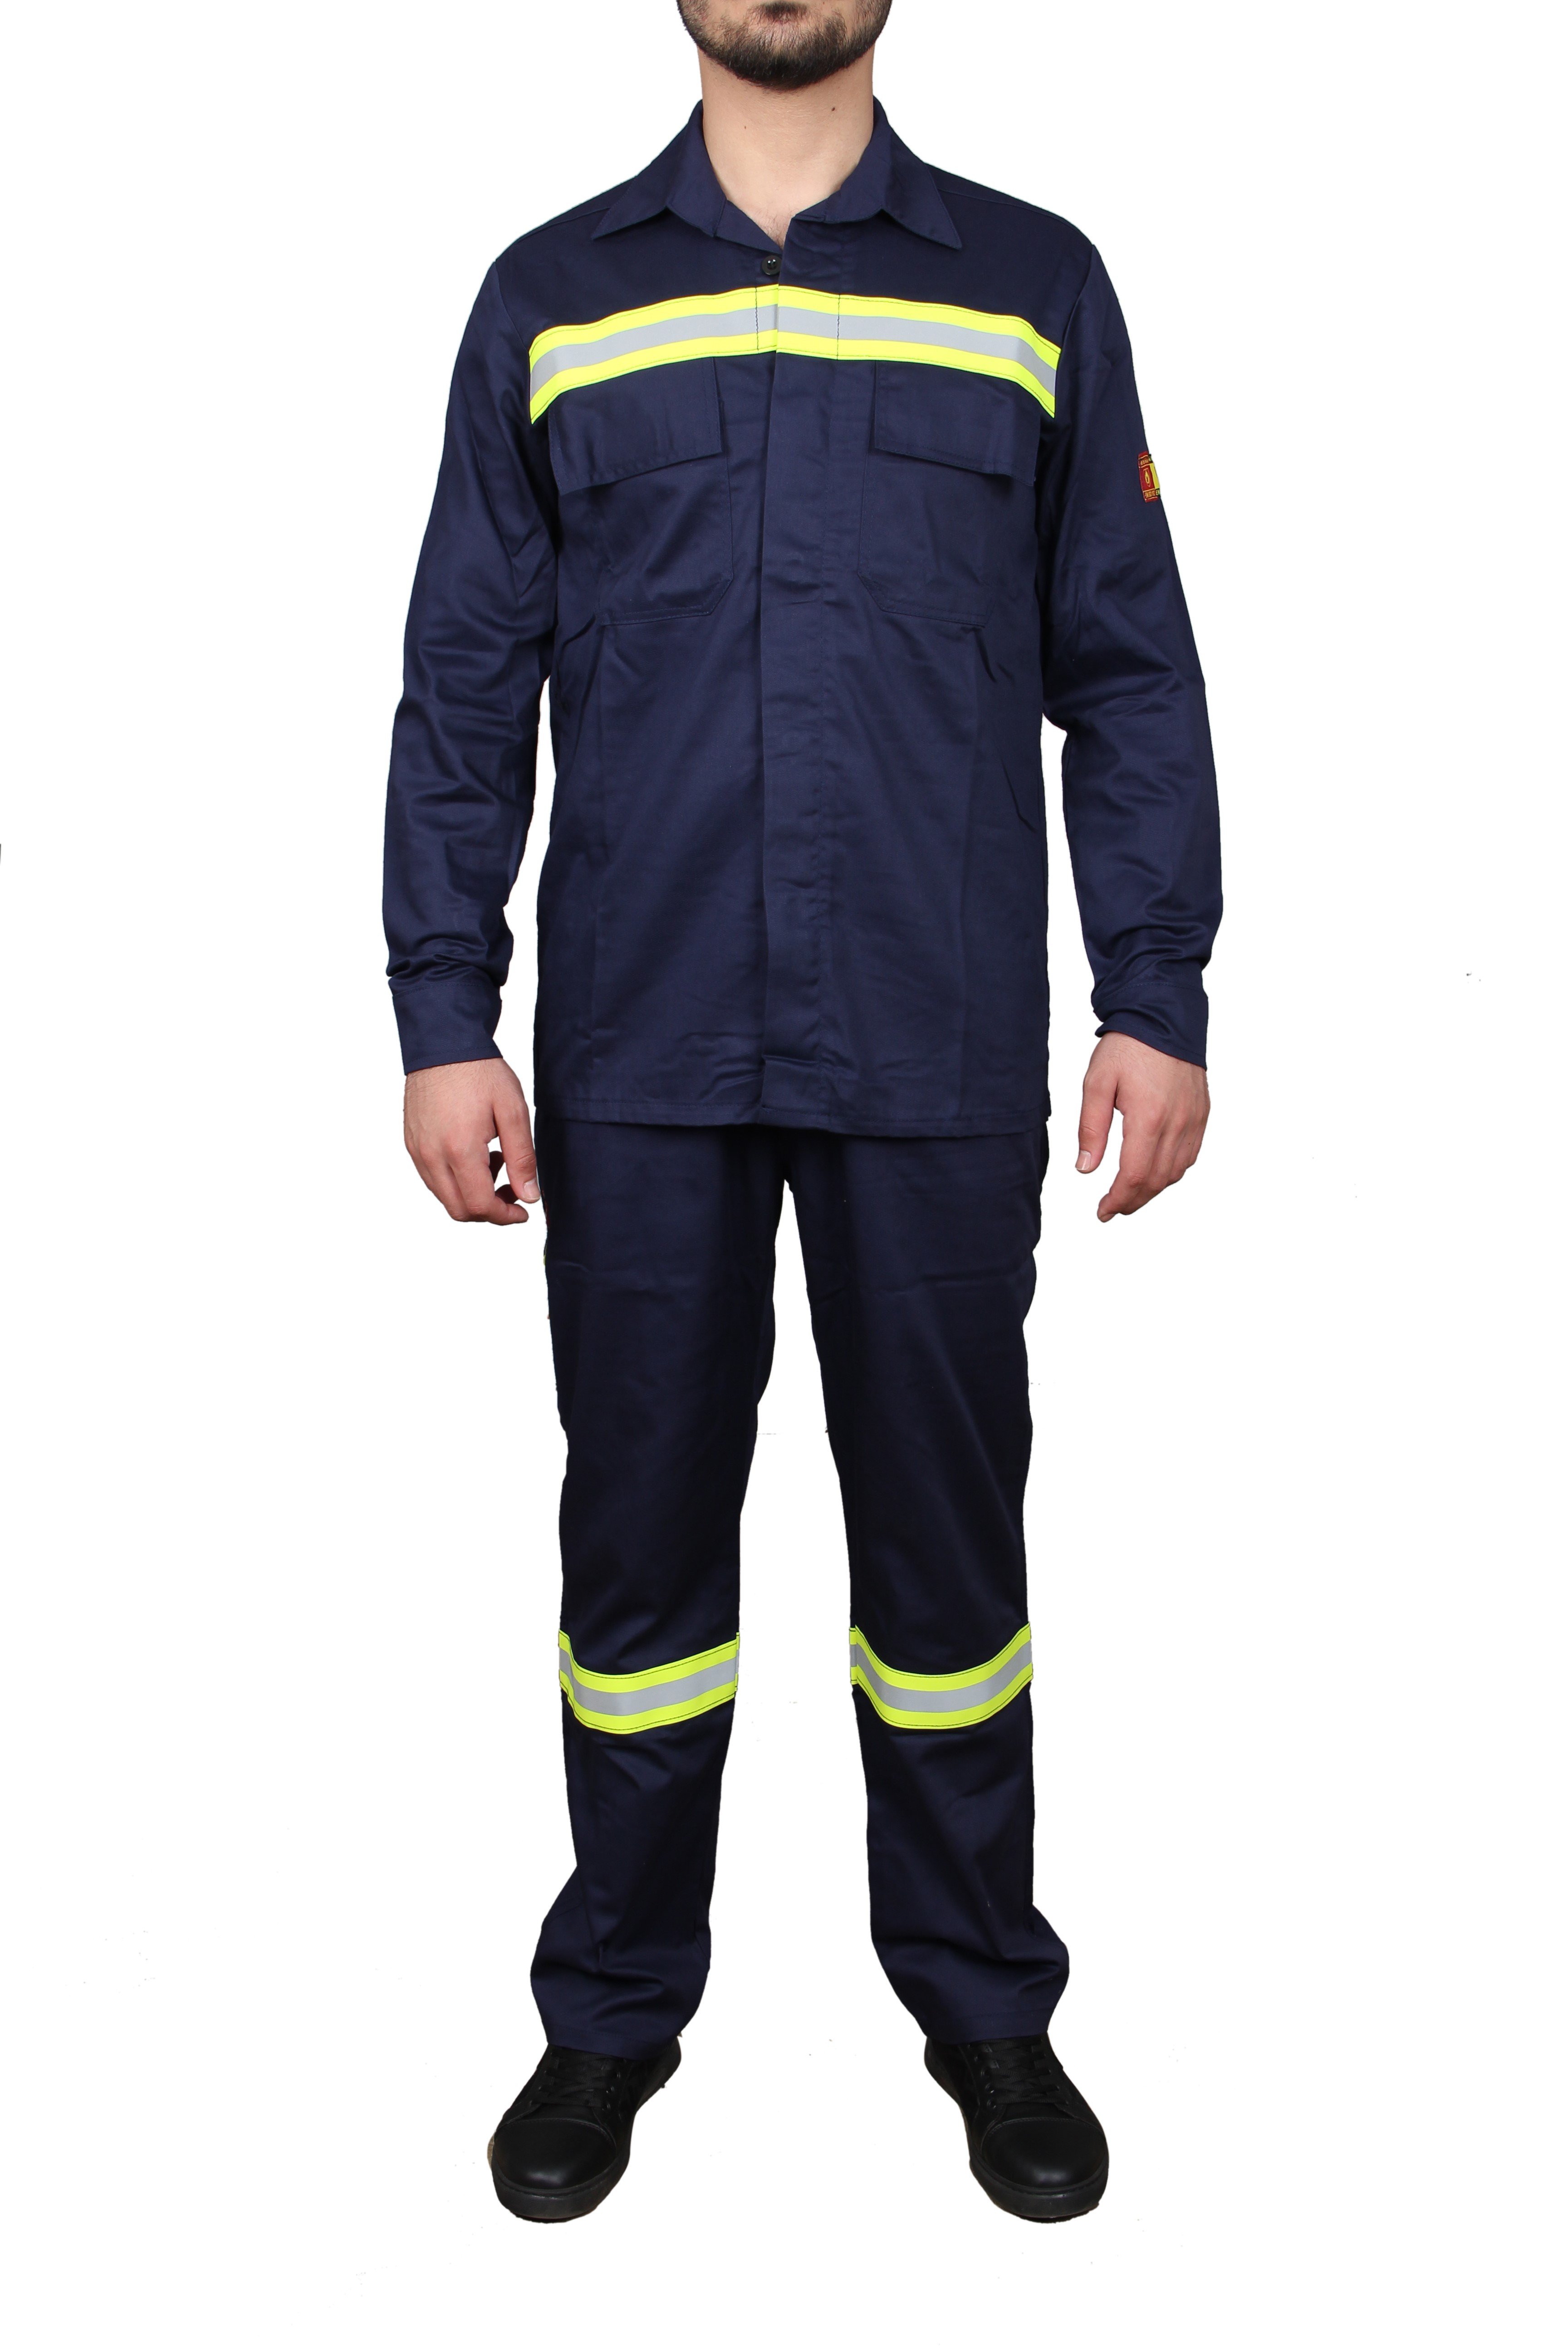 Pro-Wear Alev Almaz Kaynakçı Takımı (Pantolon&Ceket )